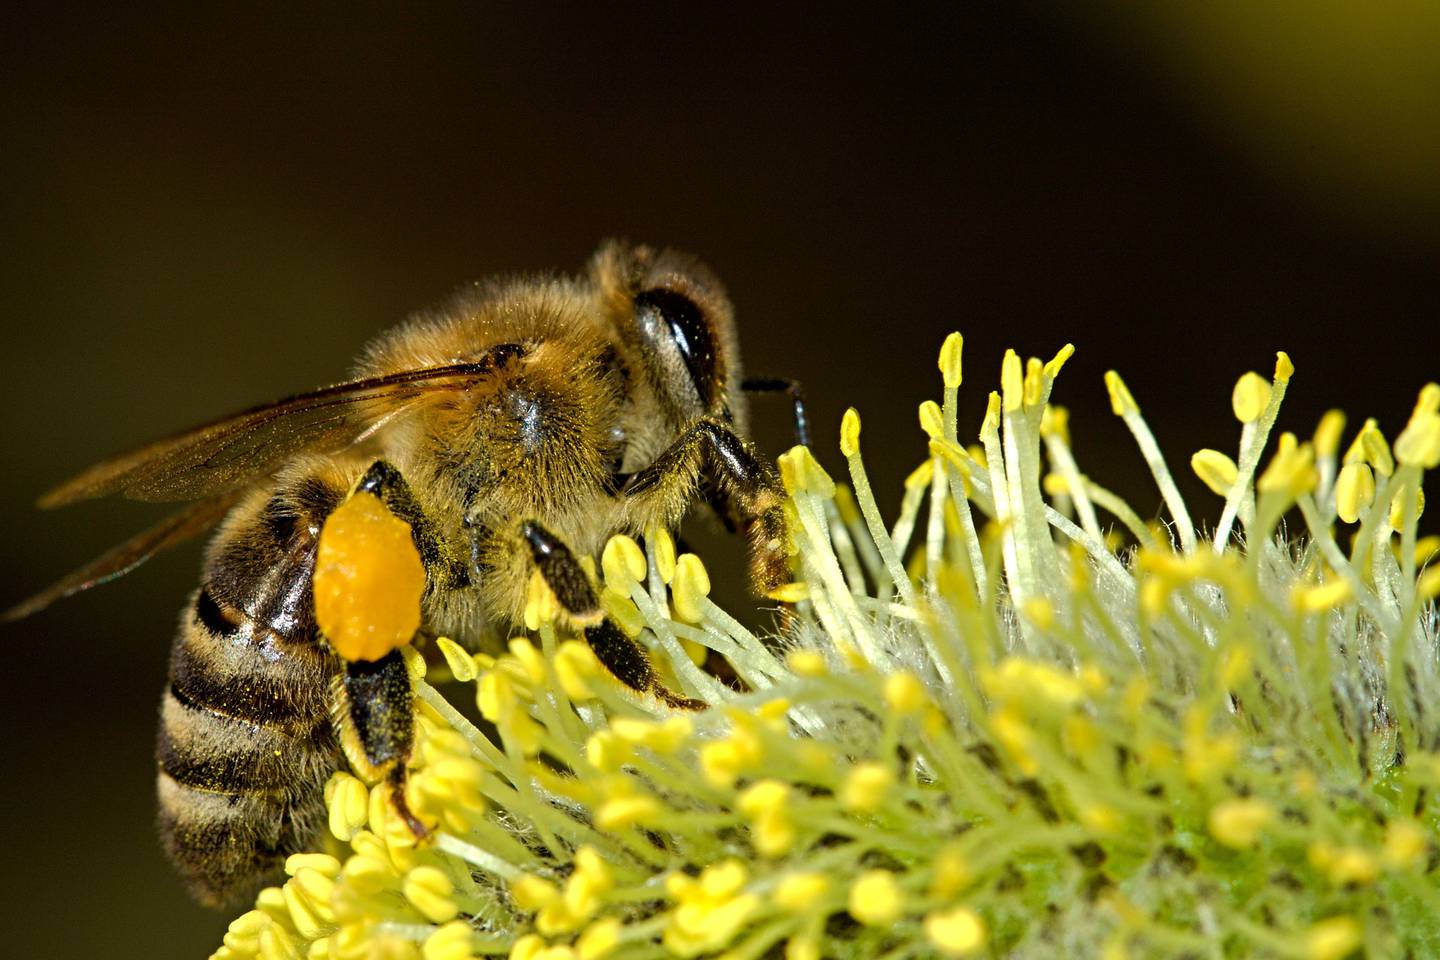 En Costa Rica existen entre 600 y 700 especies de abejas y un poquito más del 90% de estas especies son de abejas independientes (solitarias), es por eso que, buscando proteger a esa gran mayoría que no tiene colmena, nació el programa Cantones Amigos de las Abejas